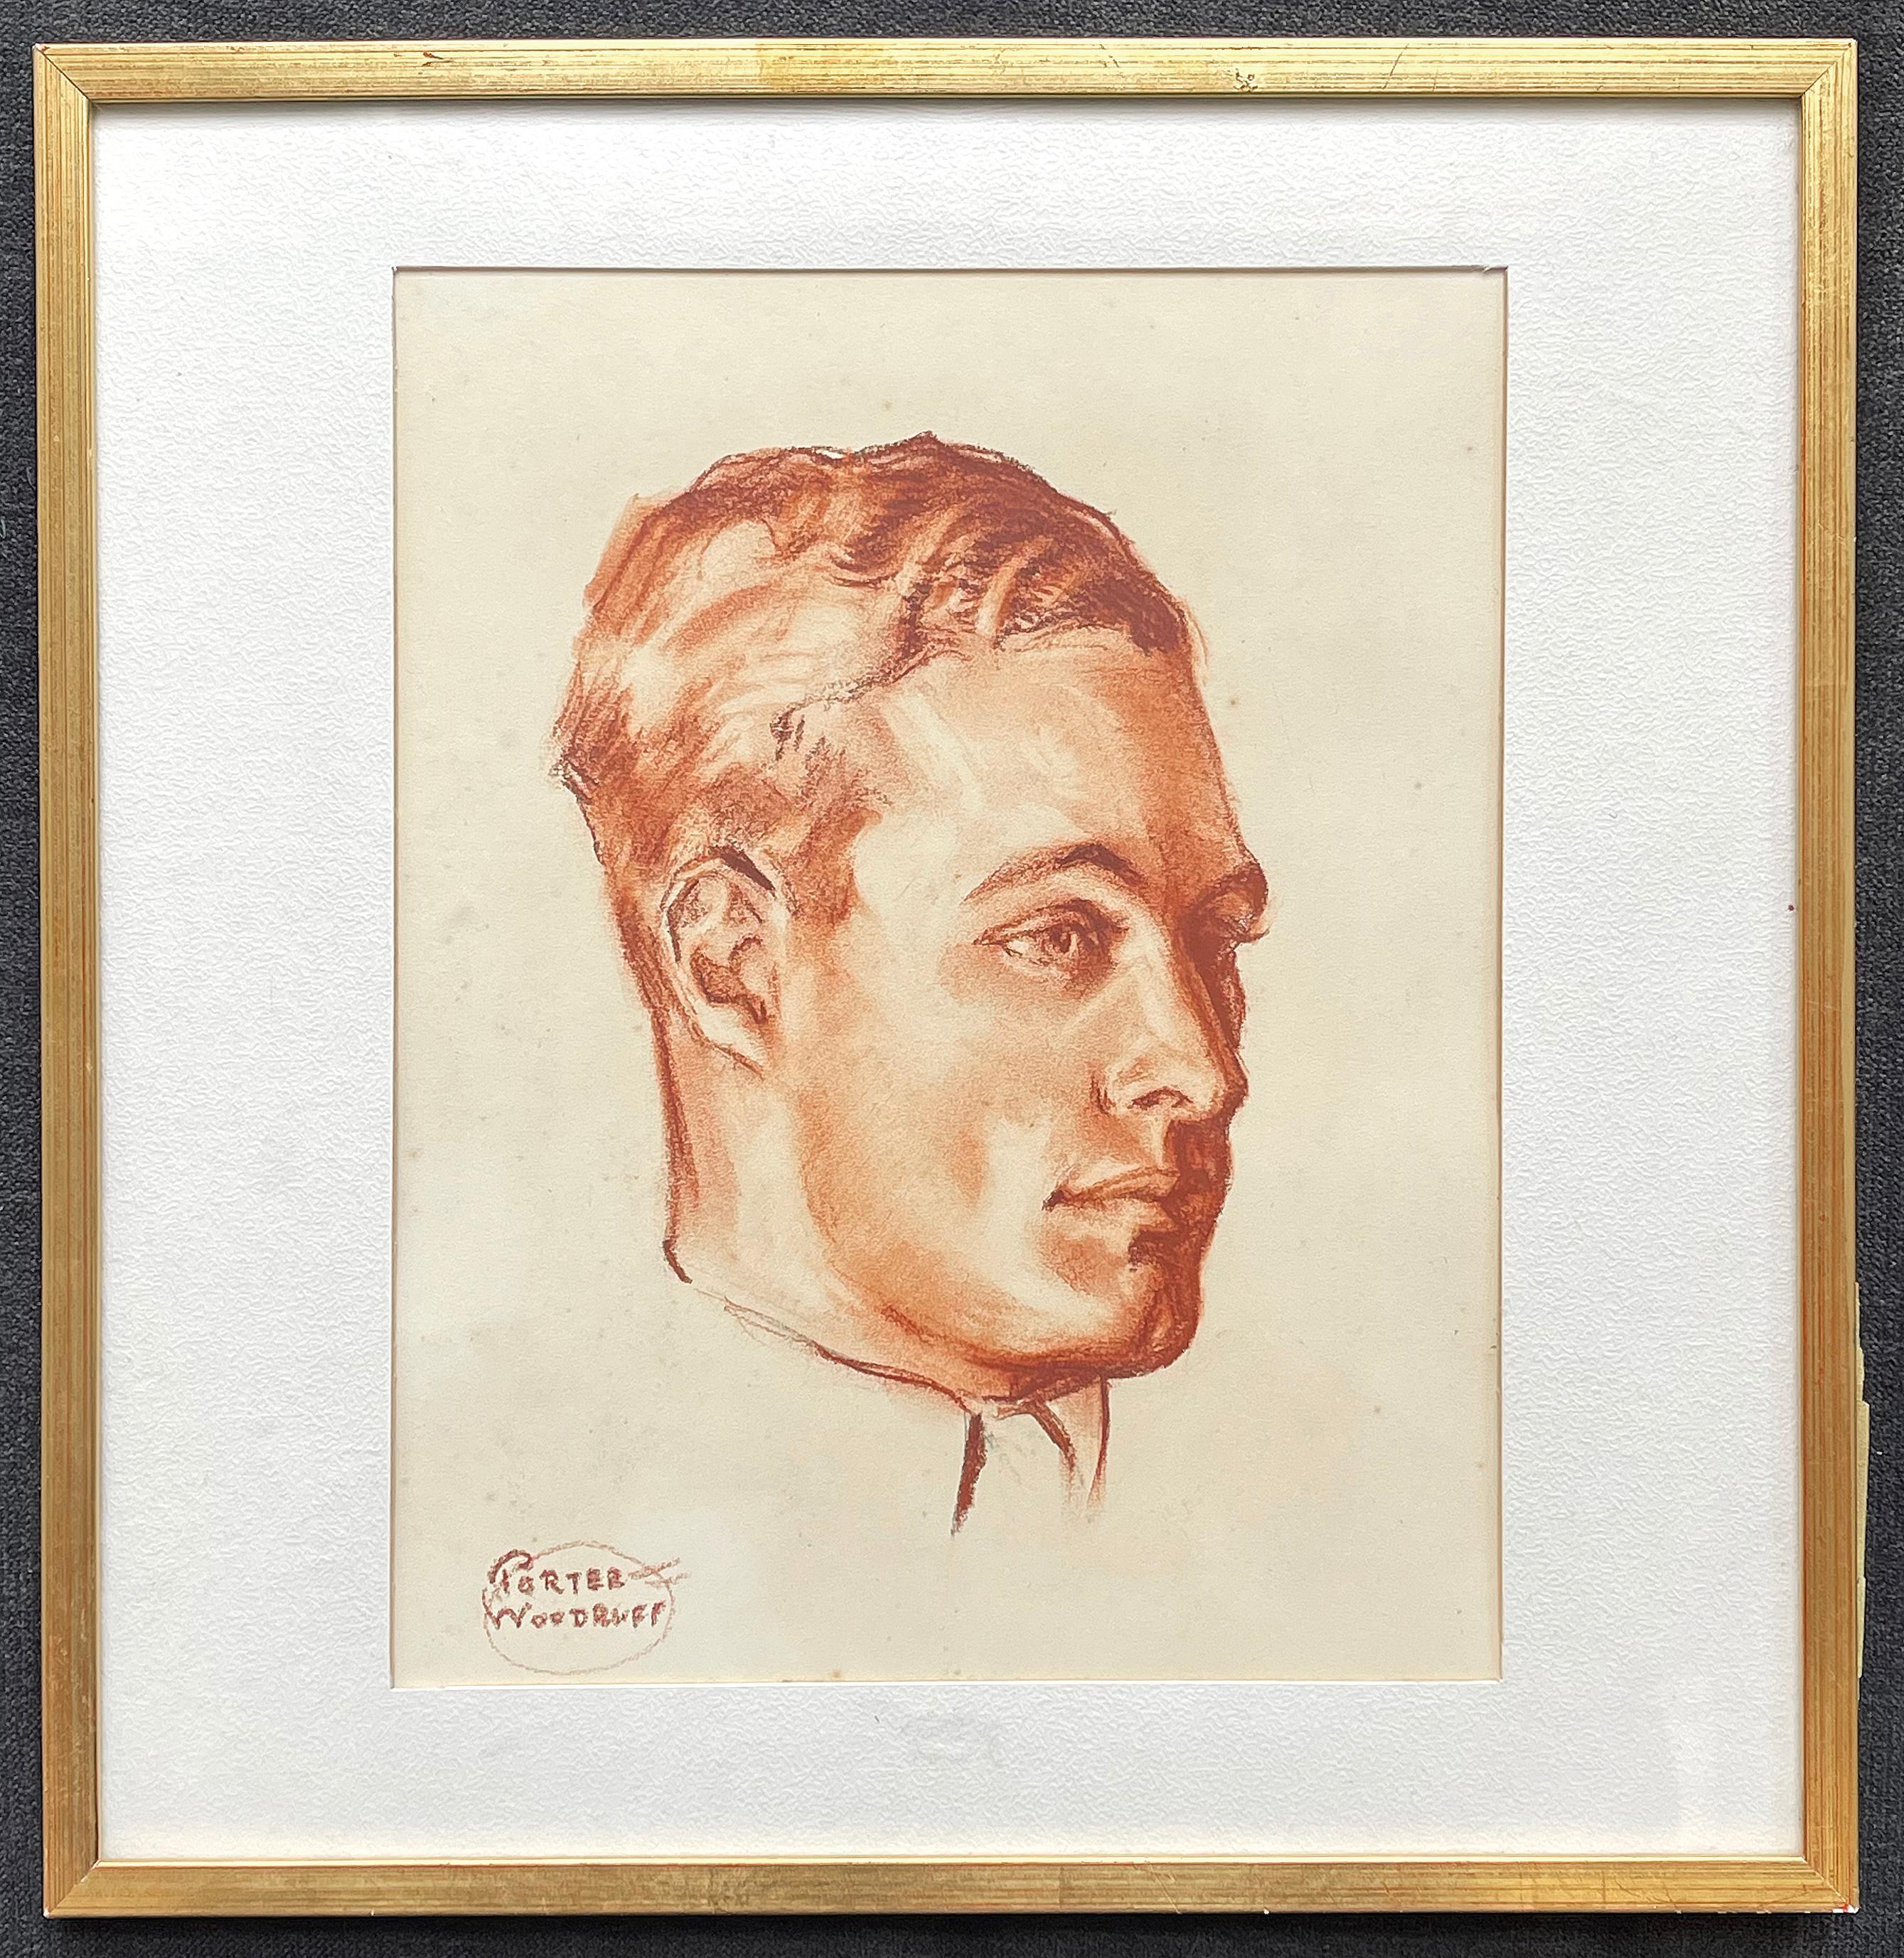 Dieses Porträt eines gut aussehenden jungen Mannes mit gespaltenem Kinn, gewelltem Haar und festem Blick wurde von Porter Woodruff in den 1930er Jahren in Pastell und Rötel auf blassgelbem Papier gezeichnet. Der Künstler ist vor allem für seine